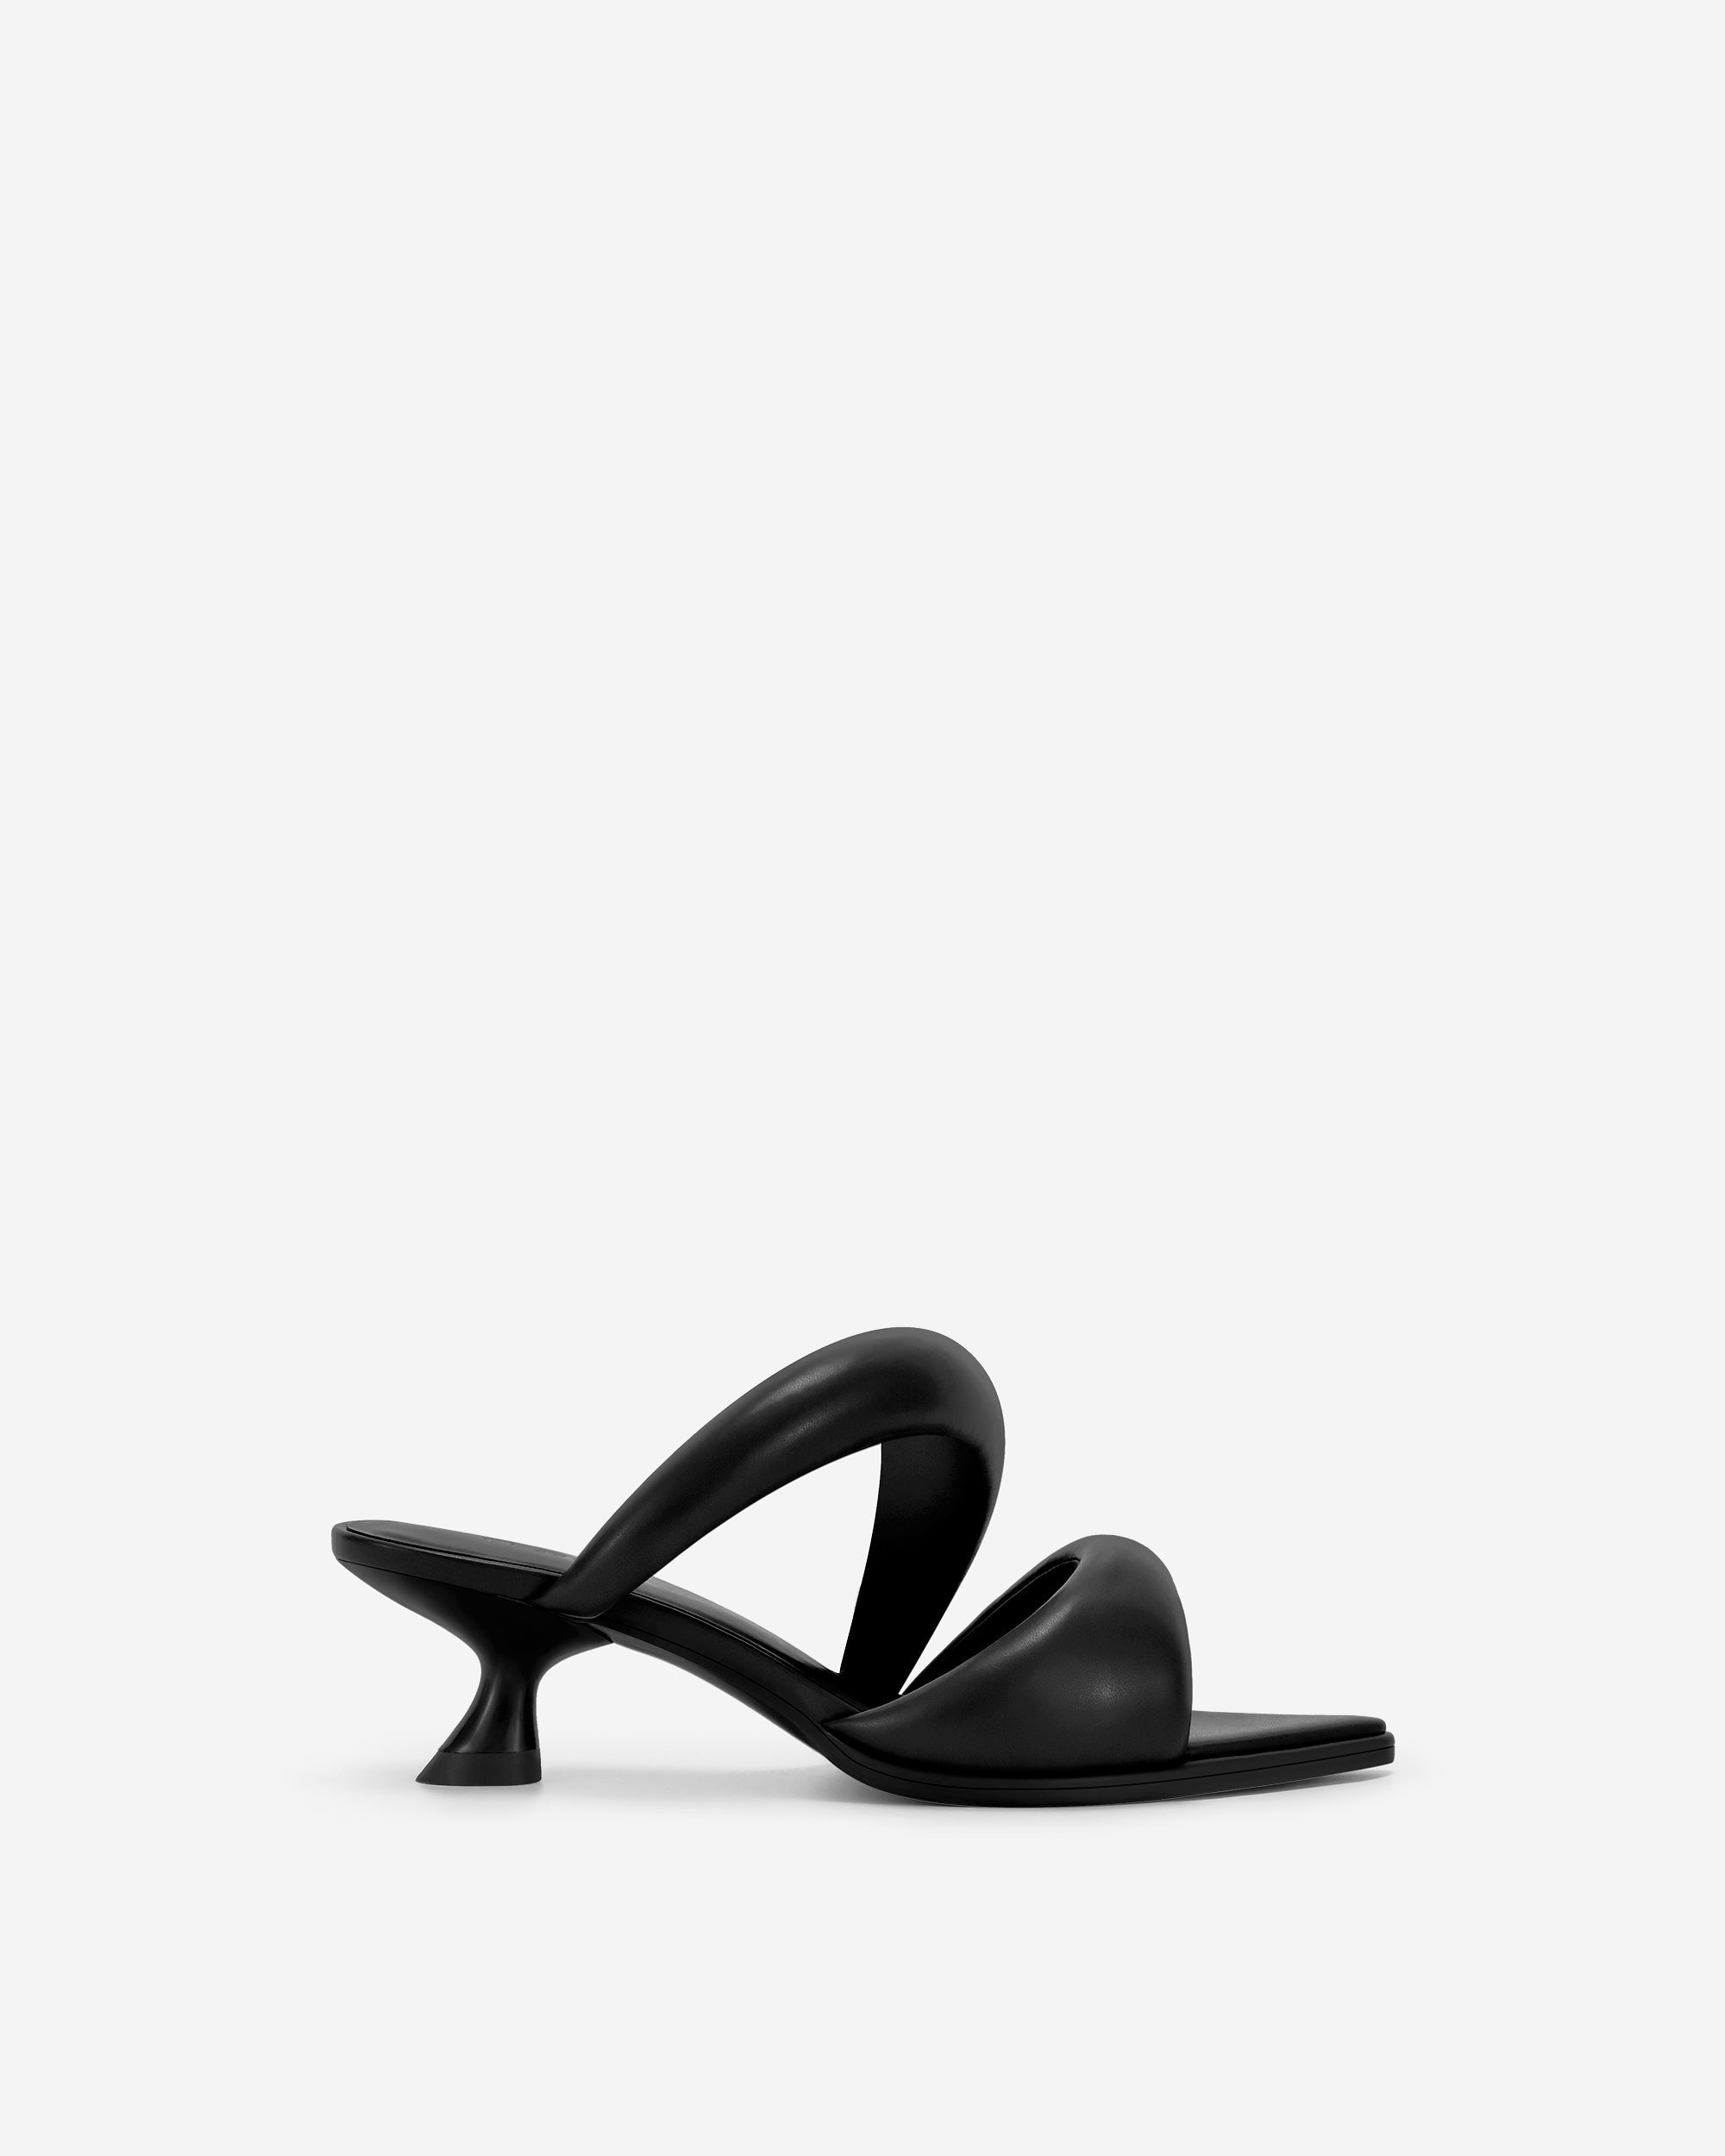 Sara 穆勒鞋-黑色